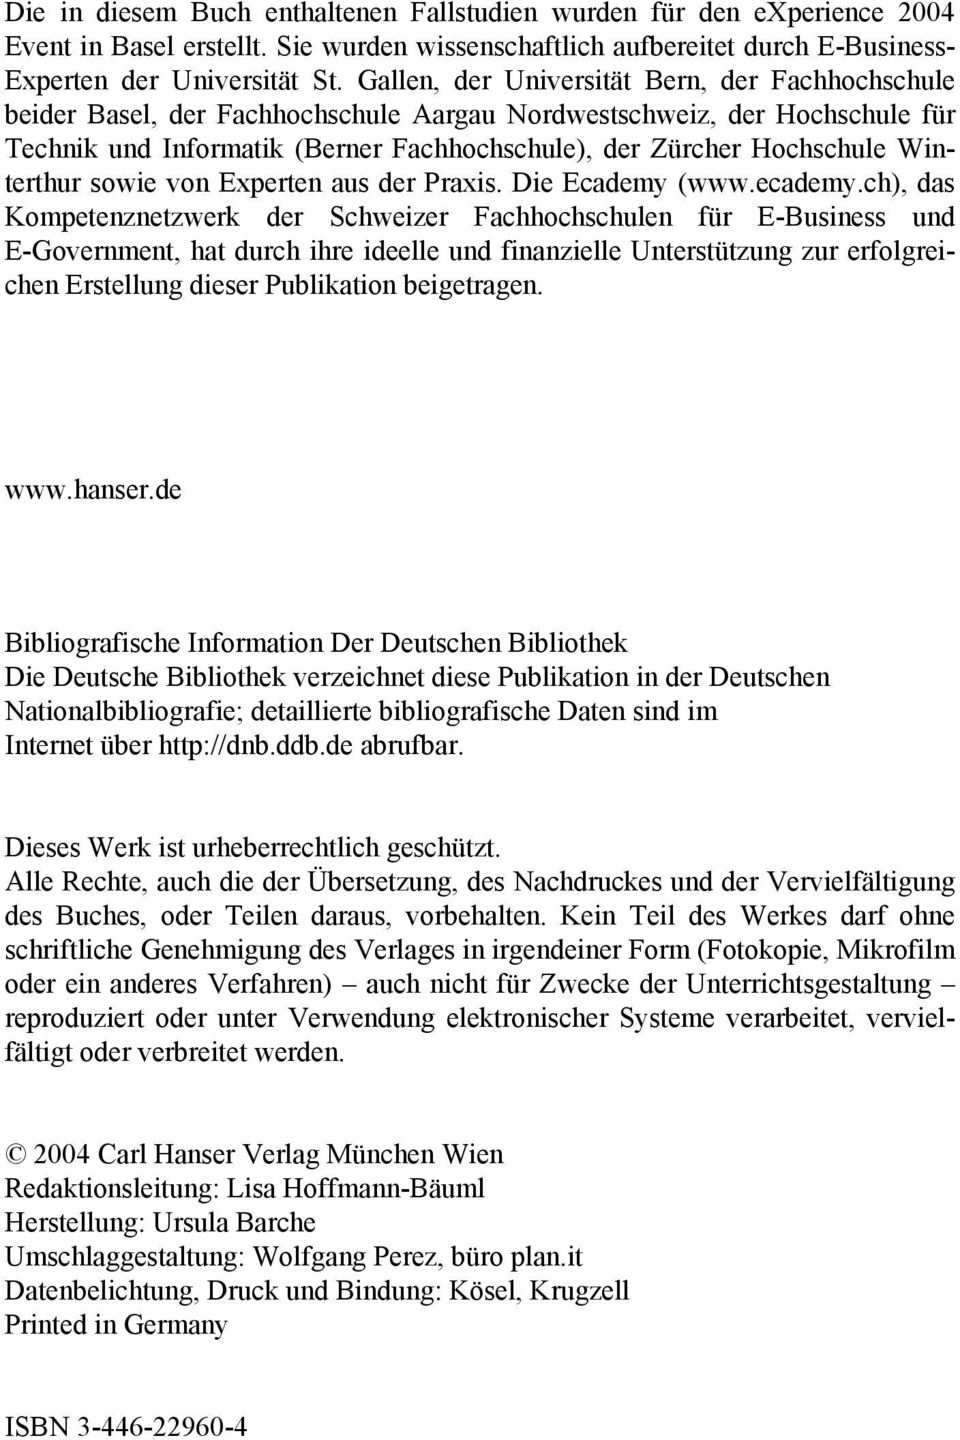 Winterthur sowie von Experten aus der Praxis. Die Ecademy (www.ecademy.